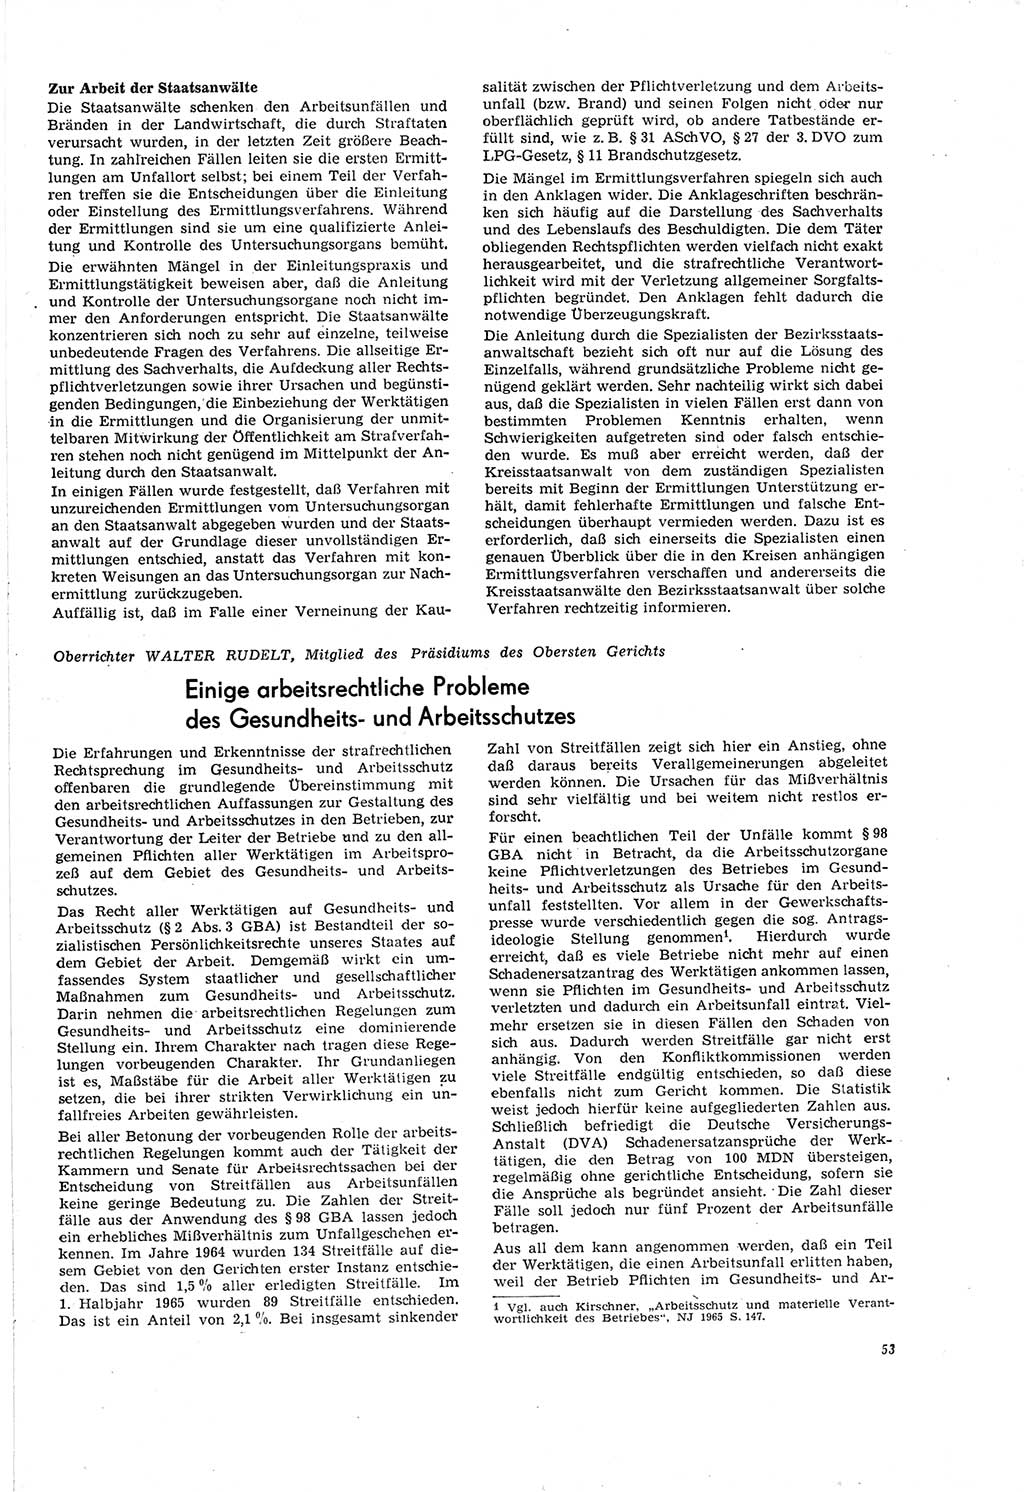 Neue Justiz (NJ), Zeitschrift für Recht und Rechtswissenschaft [Deutsche Demokratische Republik (DDR)], 20. Jahrgang 1966, Seite 53 (NJ DDR 1966, S. 53)